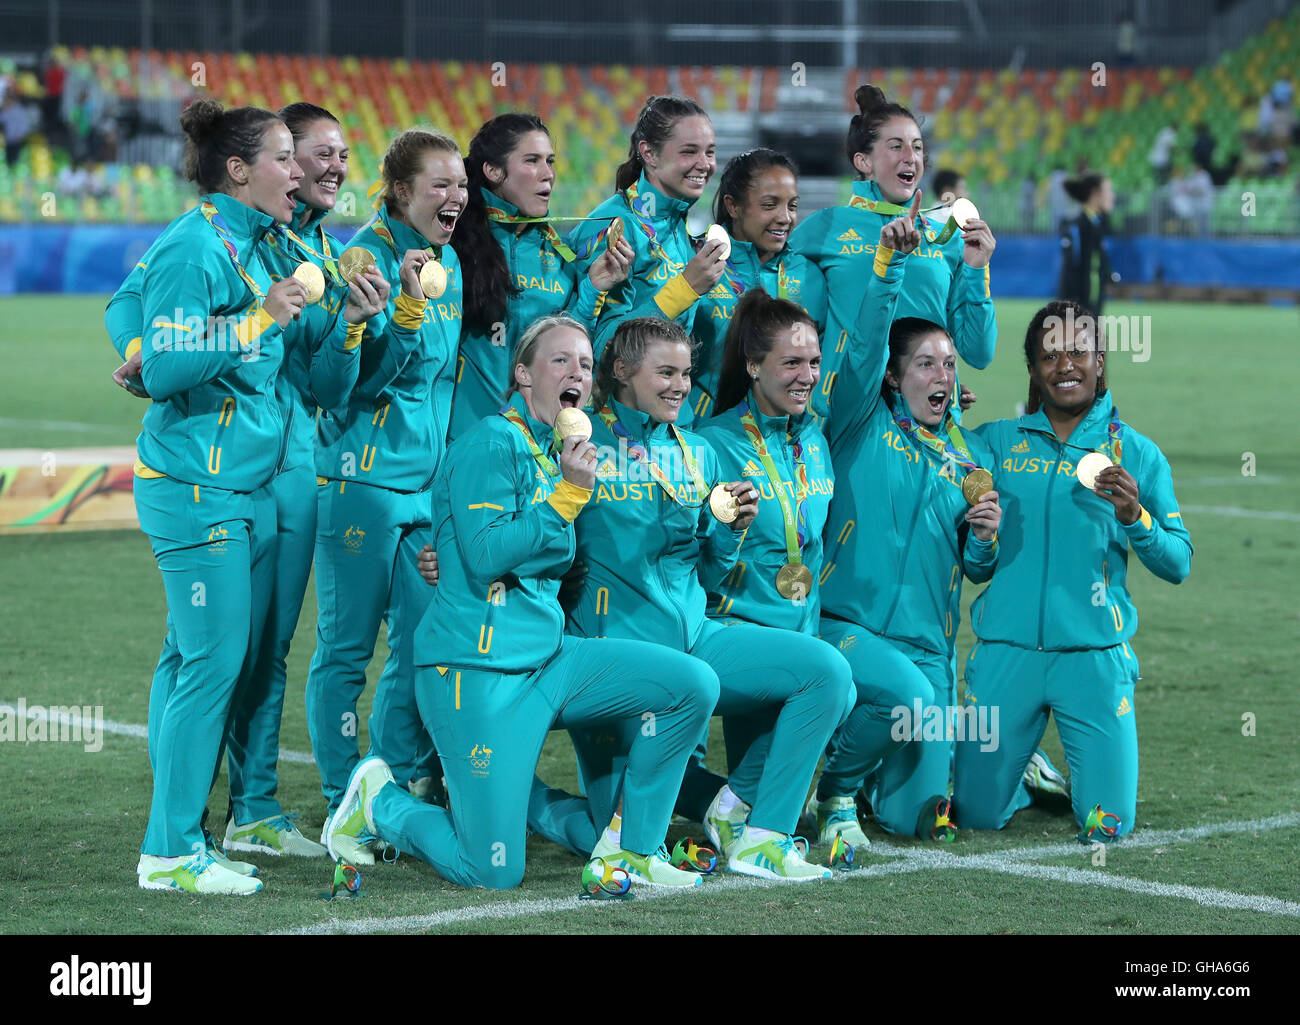 La squadra australiana festeggia con le loro medaglie d oro dopo la vittoria del Rugby Sevens al Deodoro Stadium il terzo giorno del Rio Giochi Olimpici, Brasile. Foto Stock